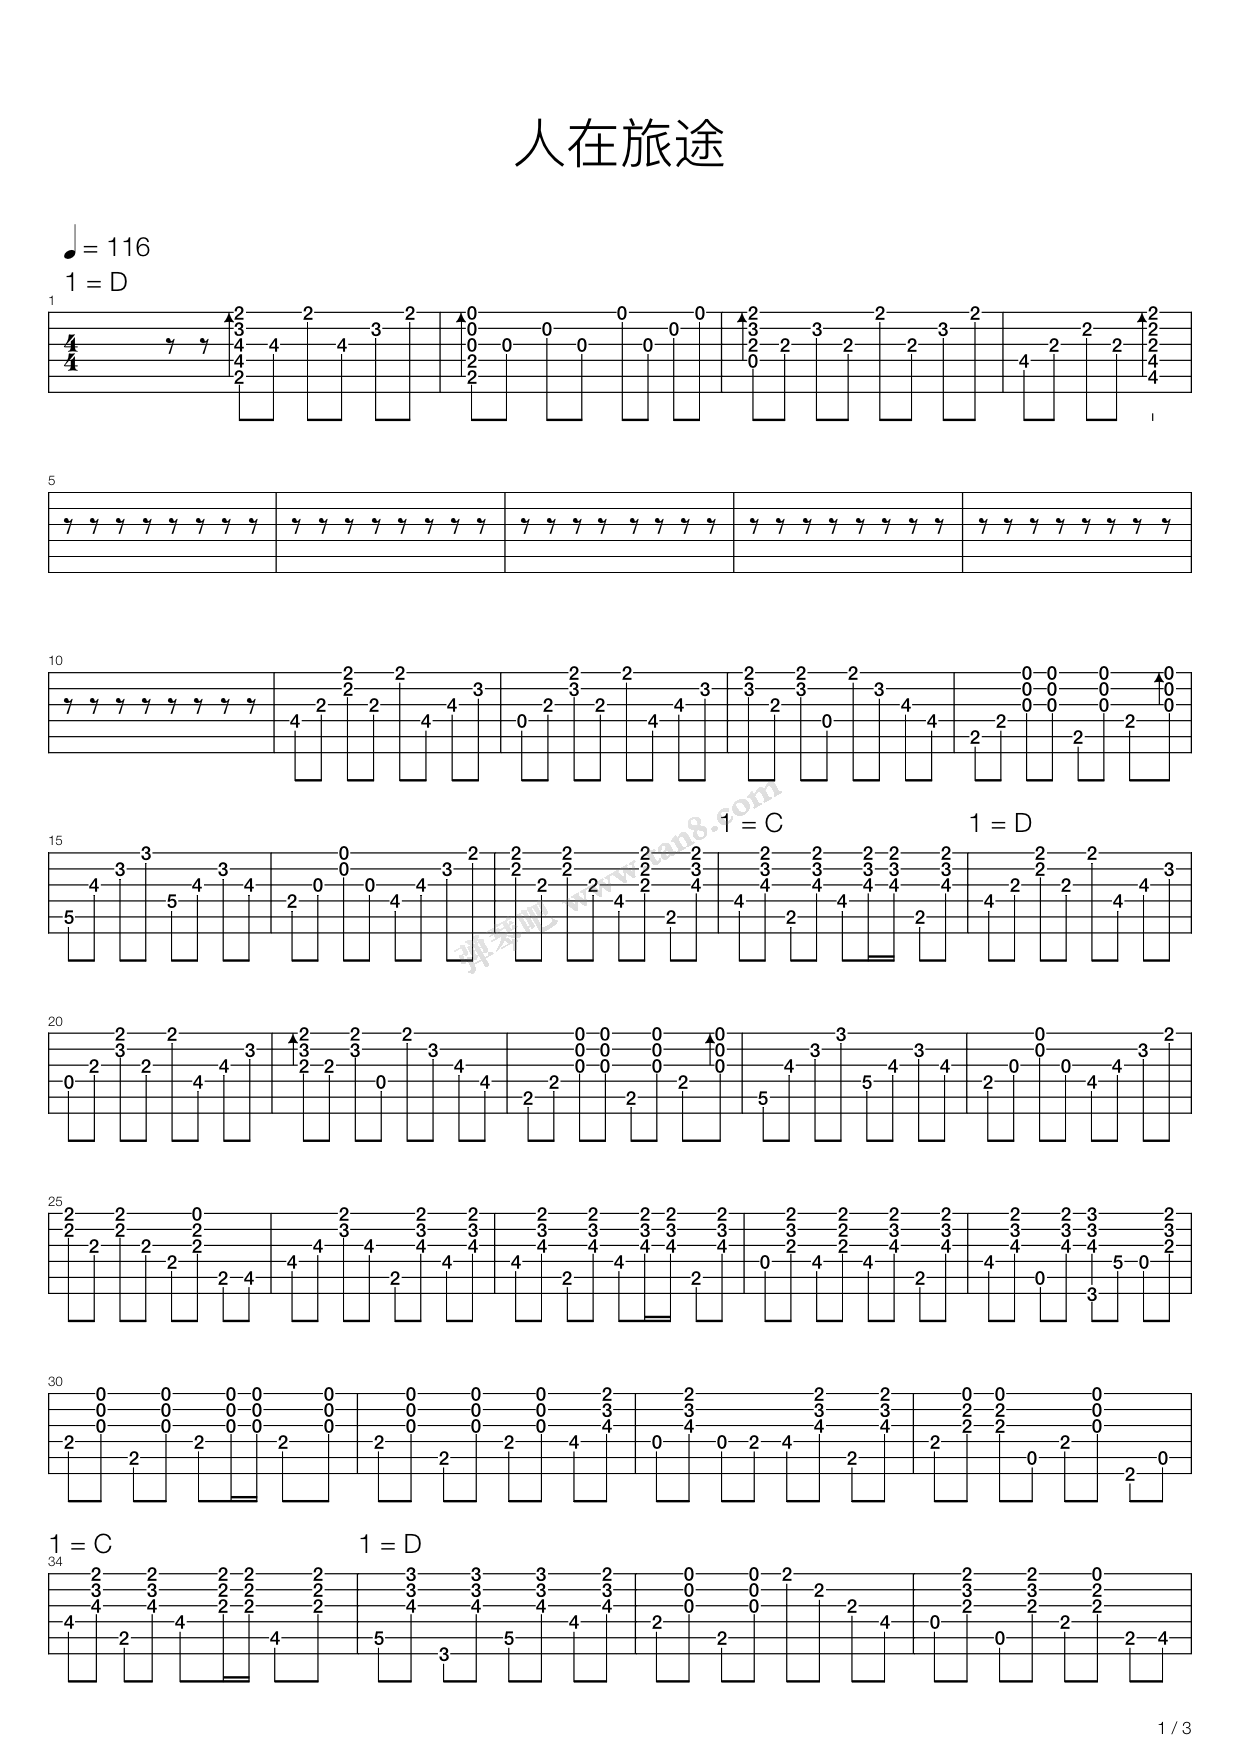 翁素英,陈鸿宇《人在旅途》吉他谱(C调)-Guitar Music Score-看乐谱网